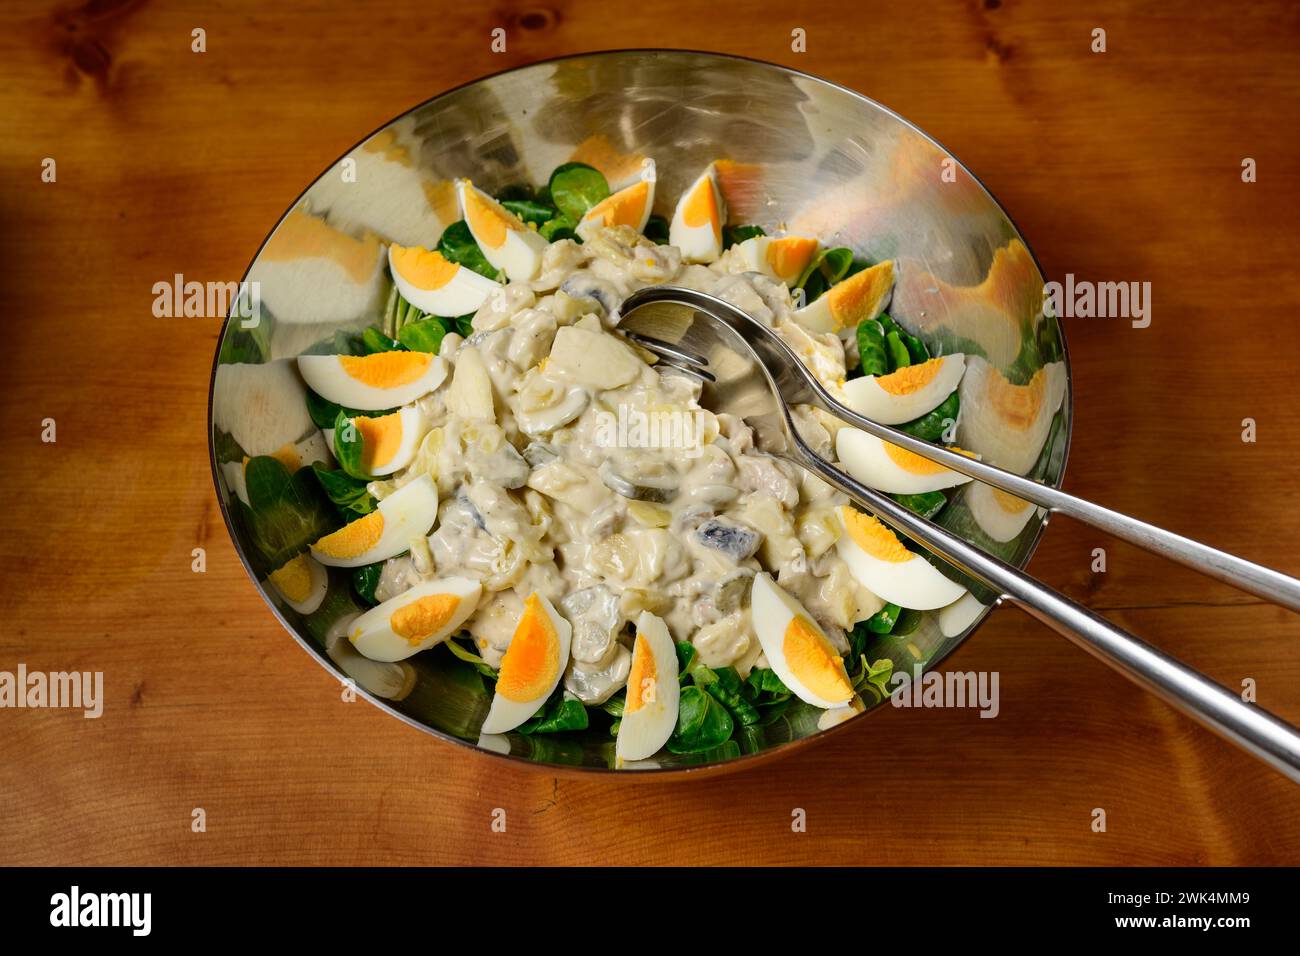 Insalata di pesce Fischsalat in stile austriaco con aringhe, patate, cetriolini, uova e insalata Foto Stock